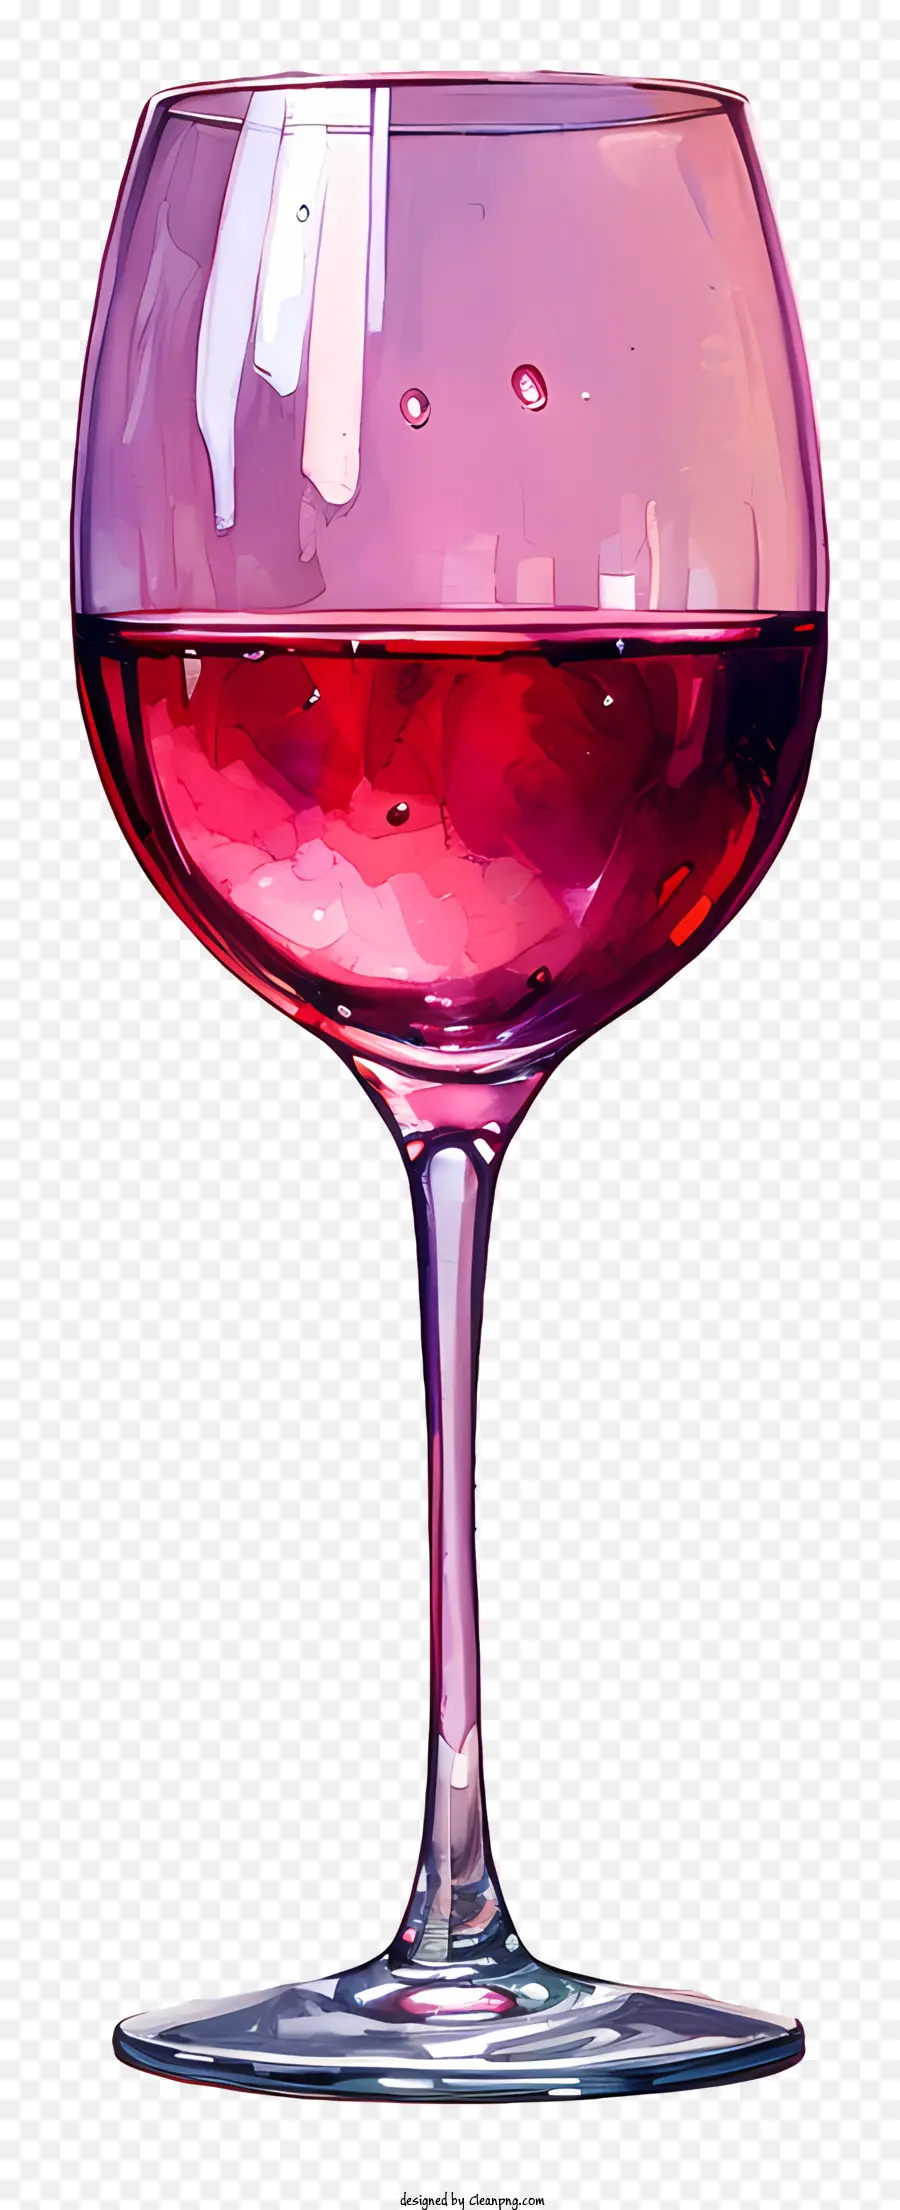 Weinglas - Glas Wein mit geringer Menge verbleibend, wirbeln